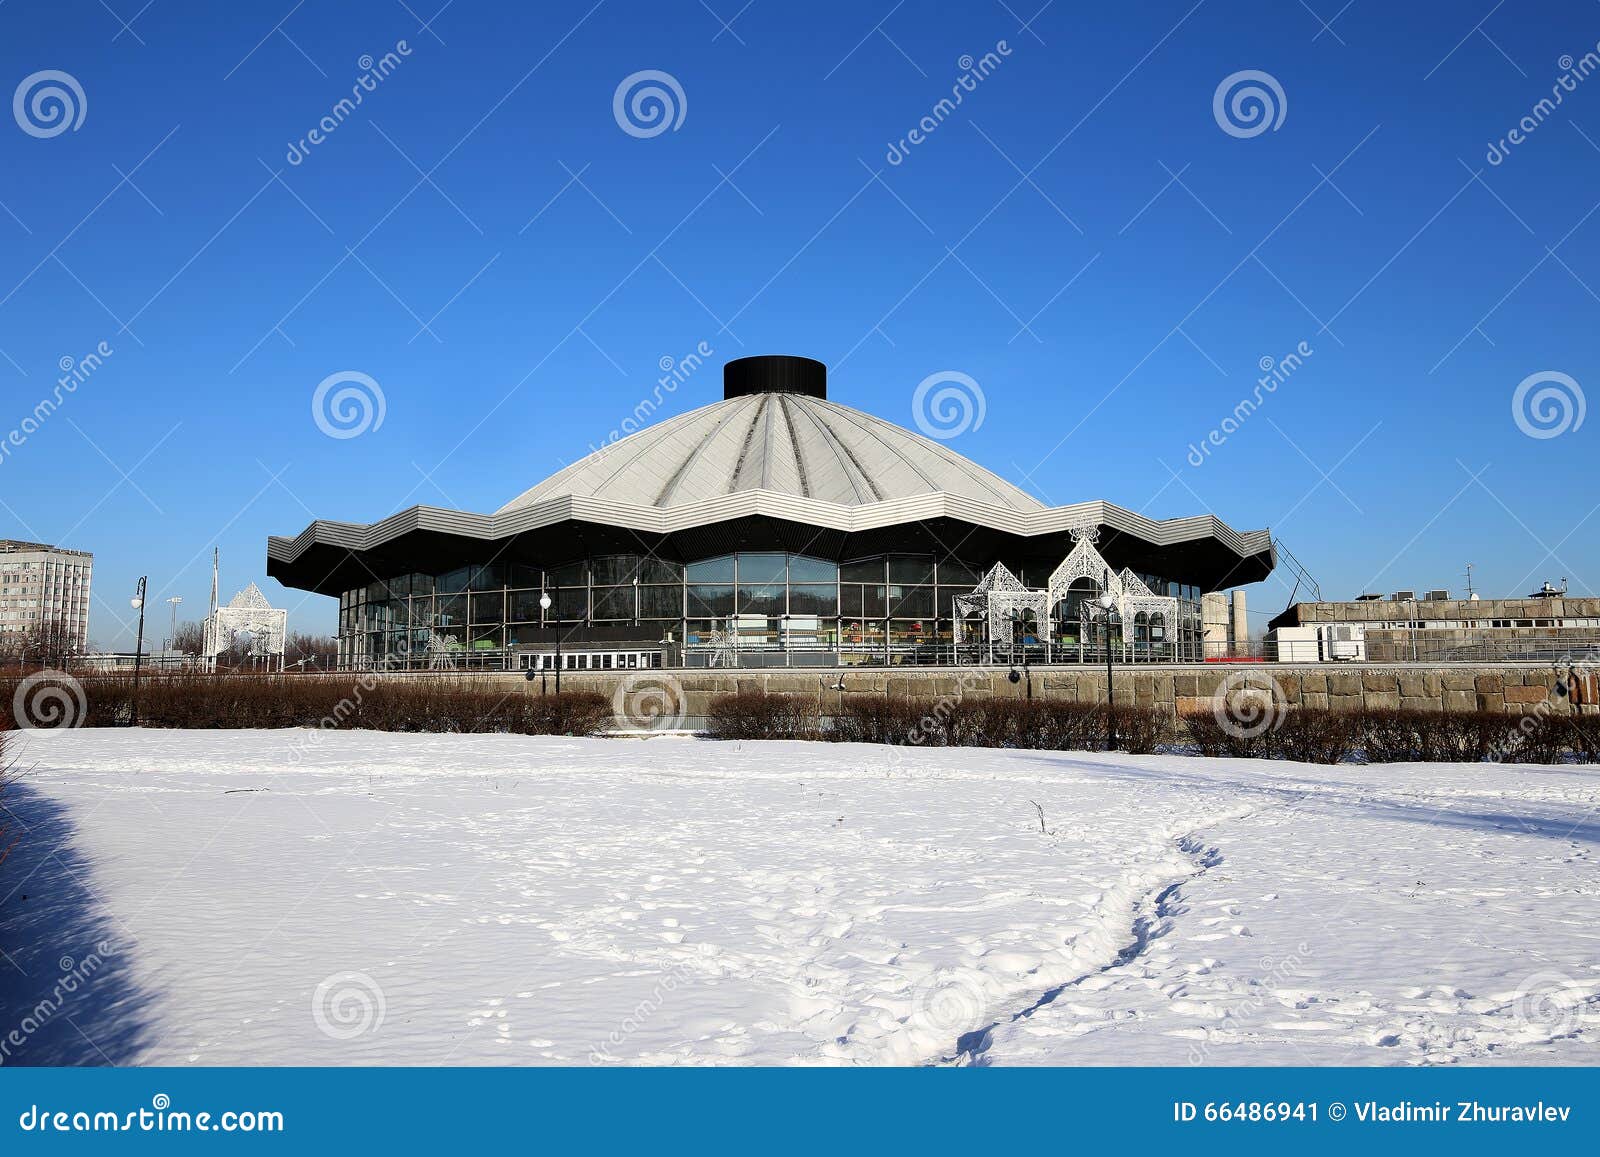 Цирк на Вернадского зимой фото